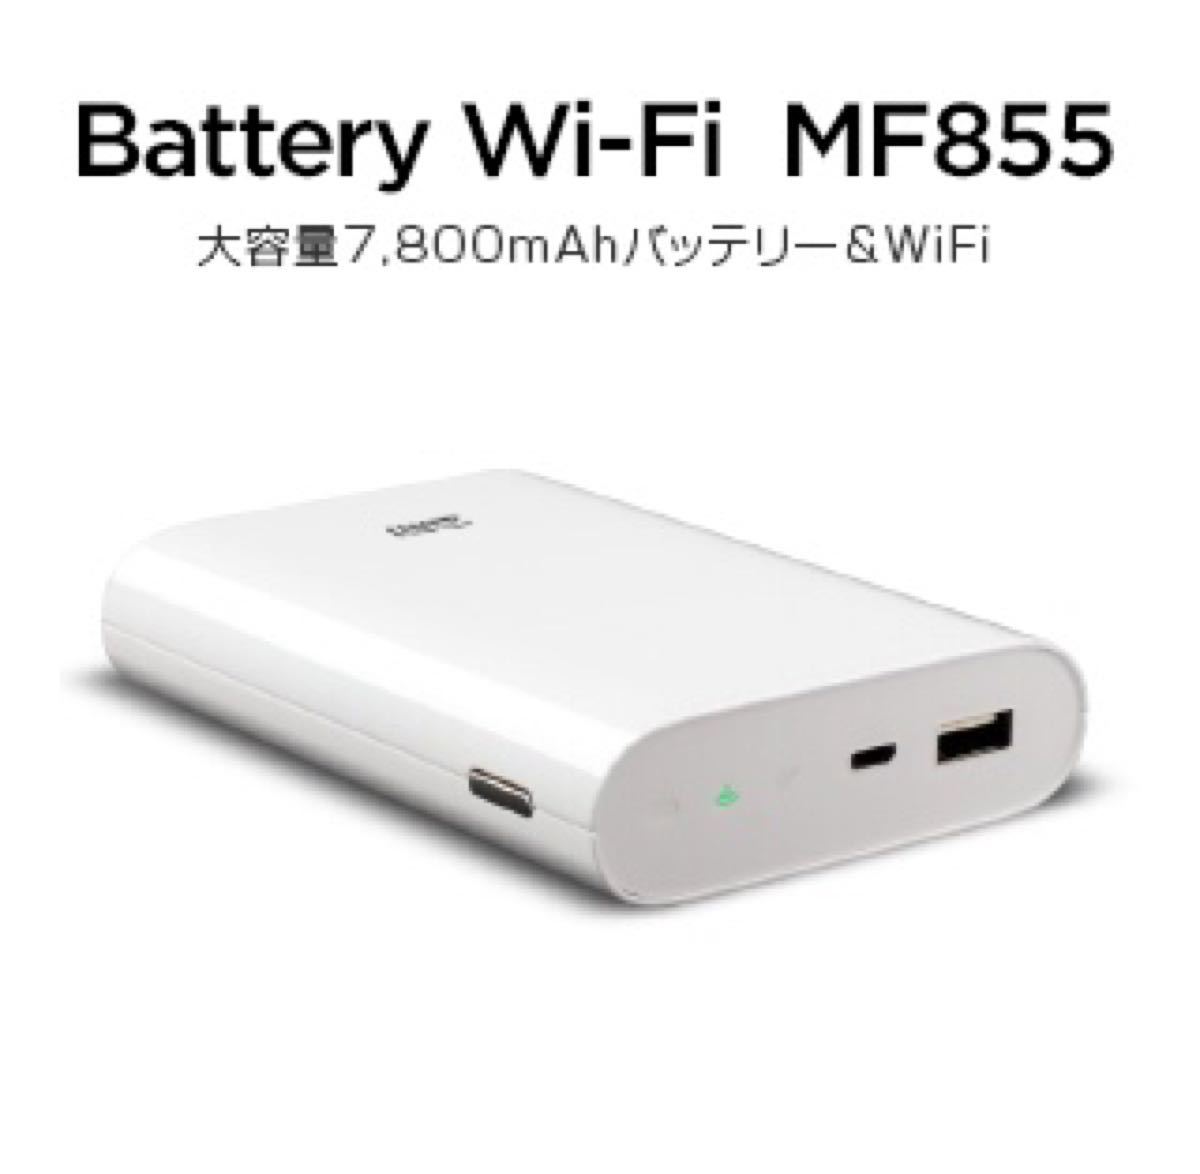 SIMフリーモバイルWi-FiルーターBattery MF855日本版 おまけ付